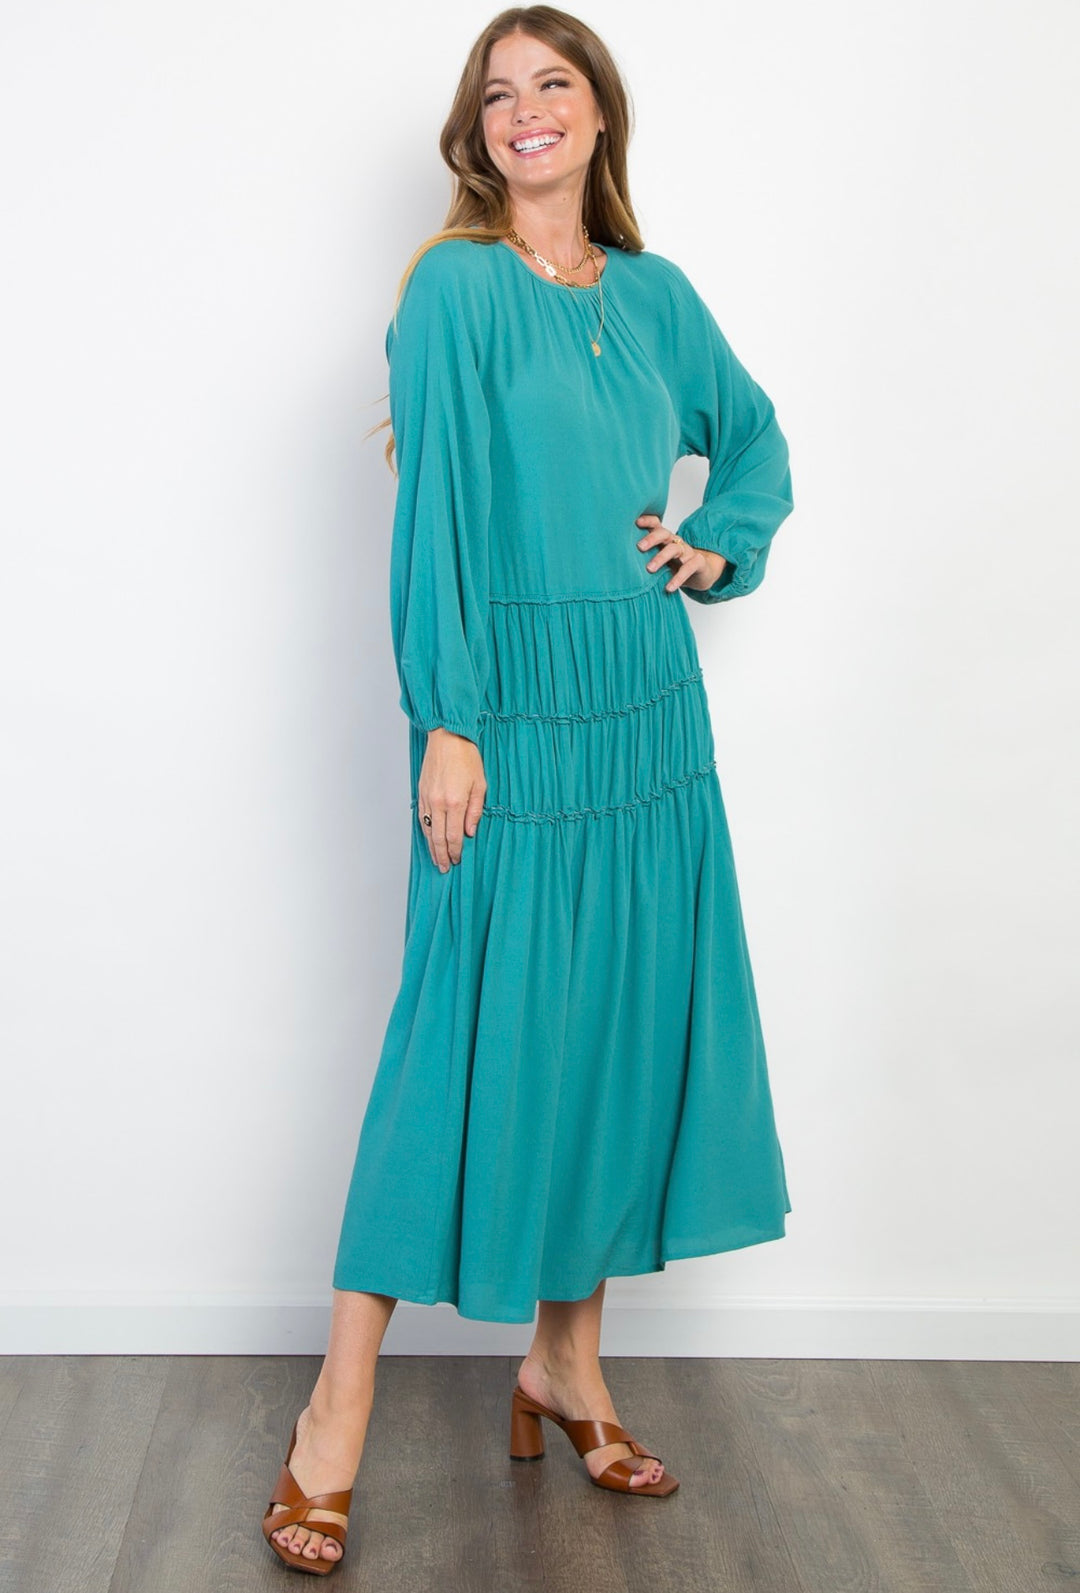 Women's Dusty Blue Dusty Turquoise Long Modest Dress